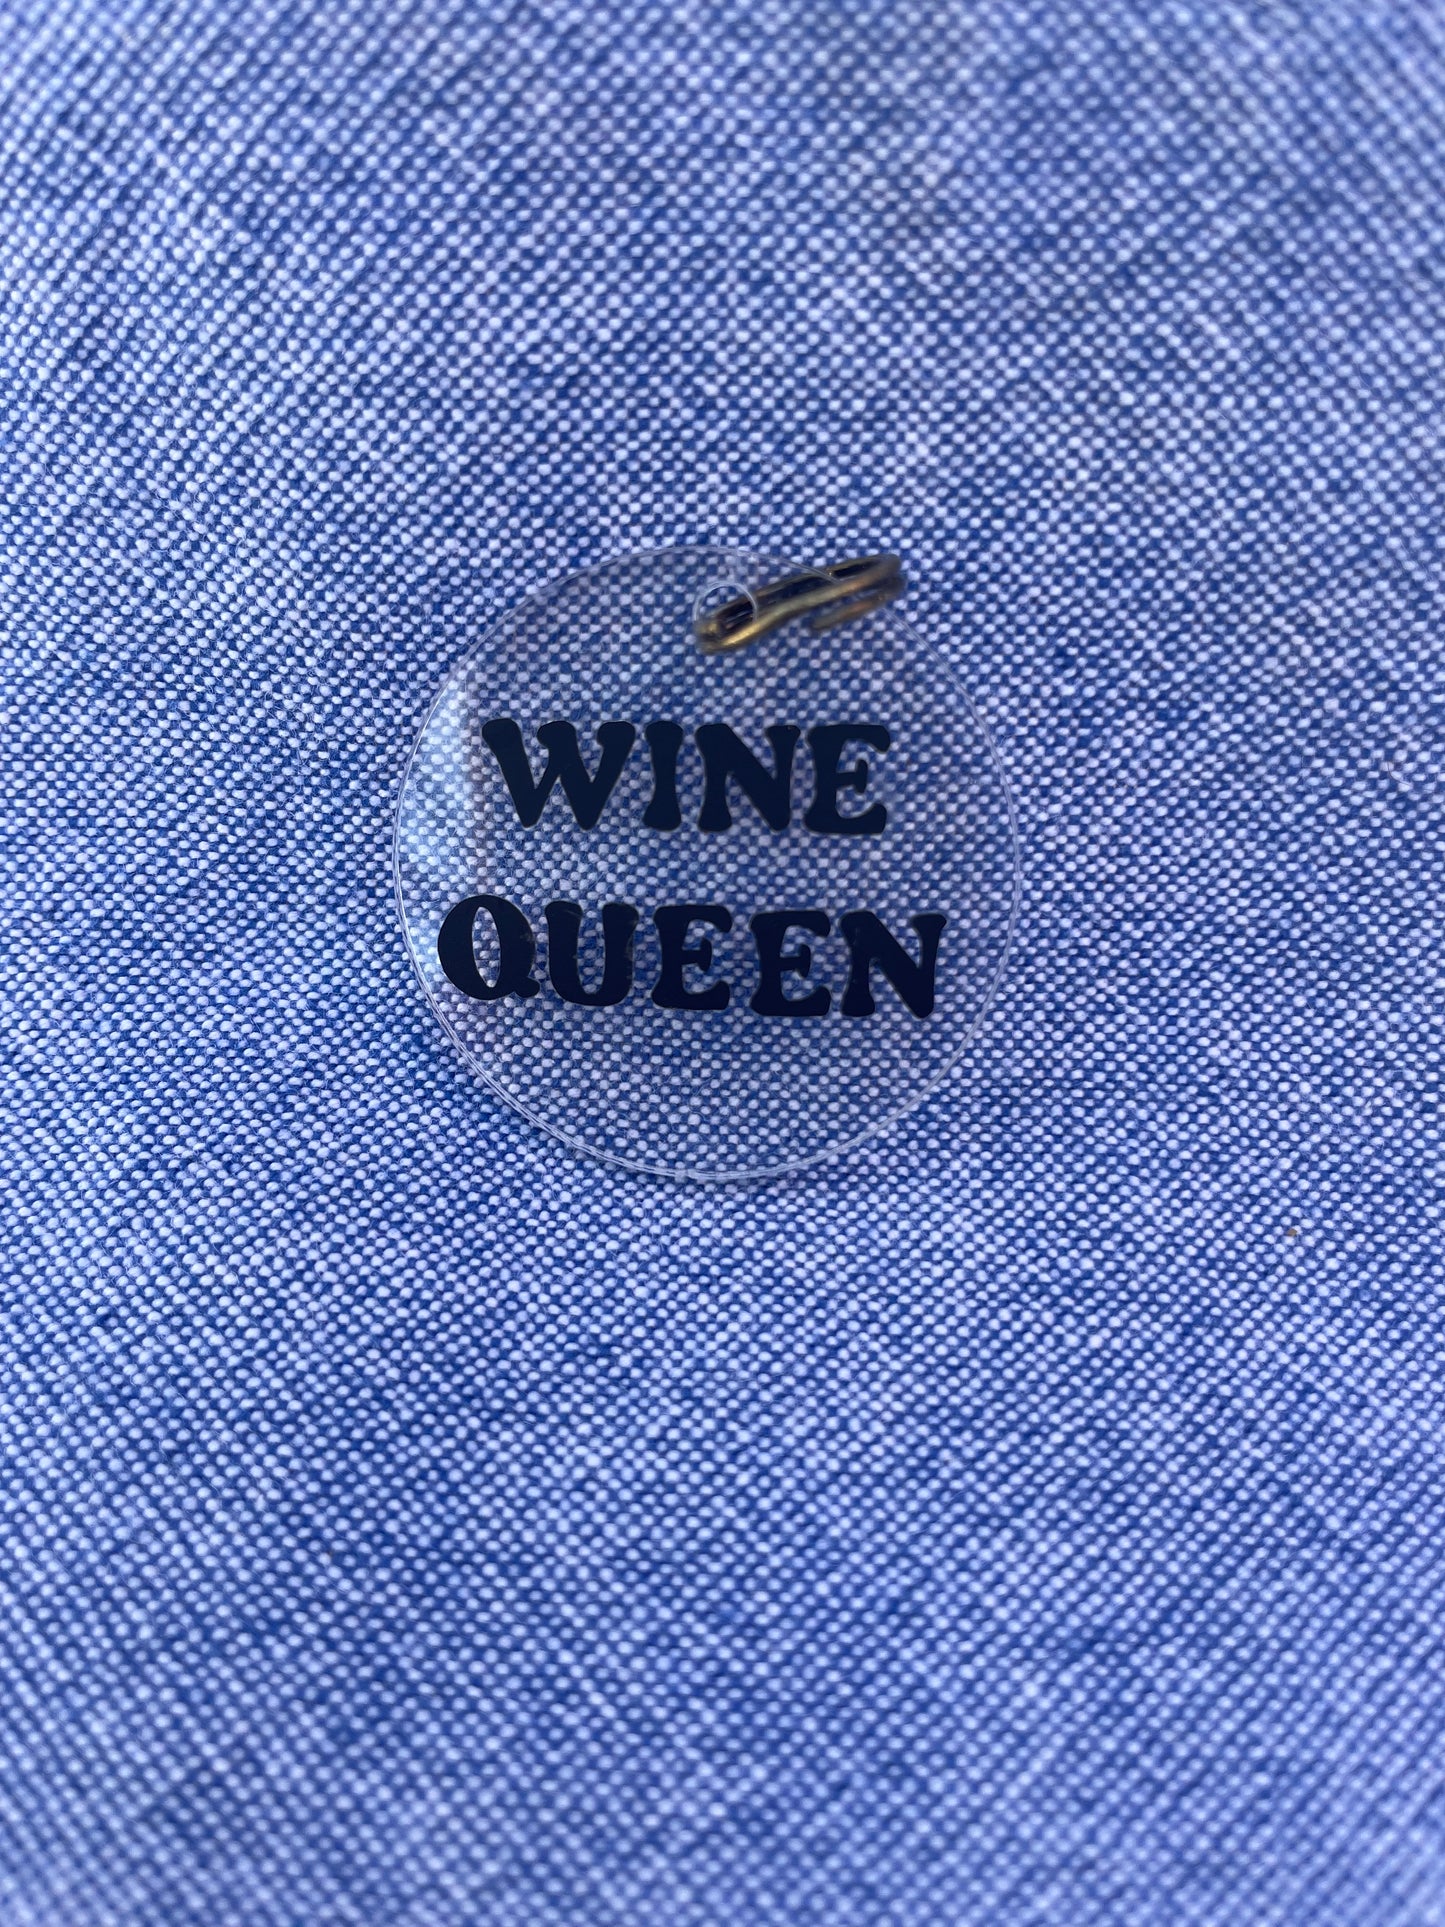 Wine Queen Charm